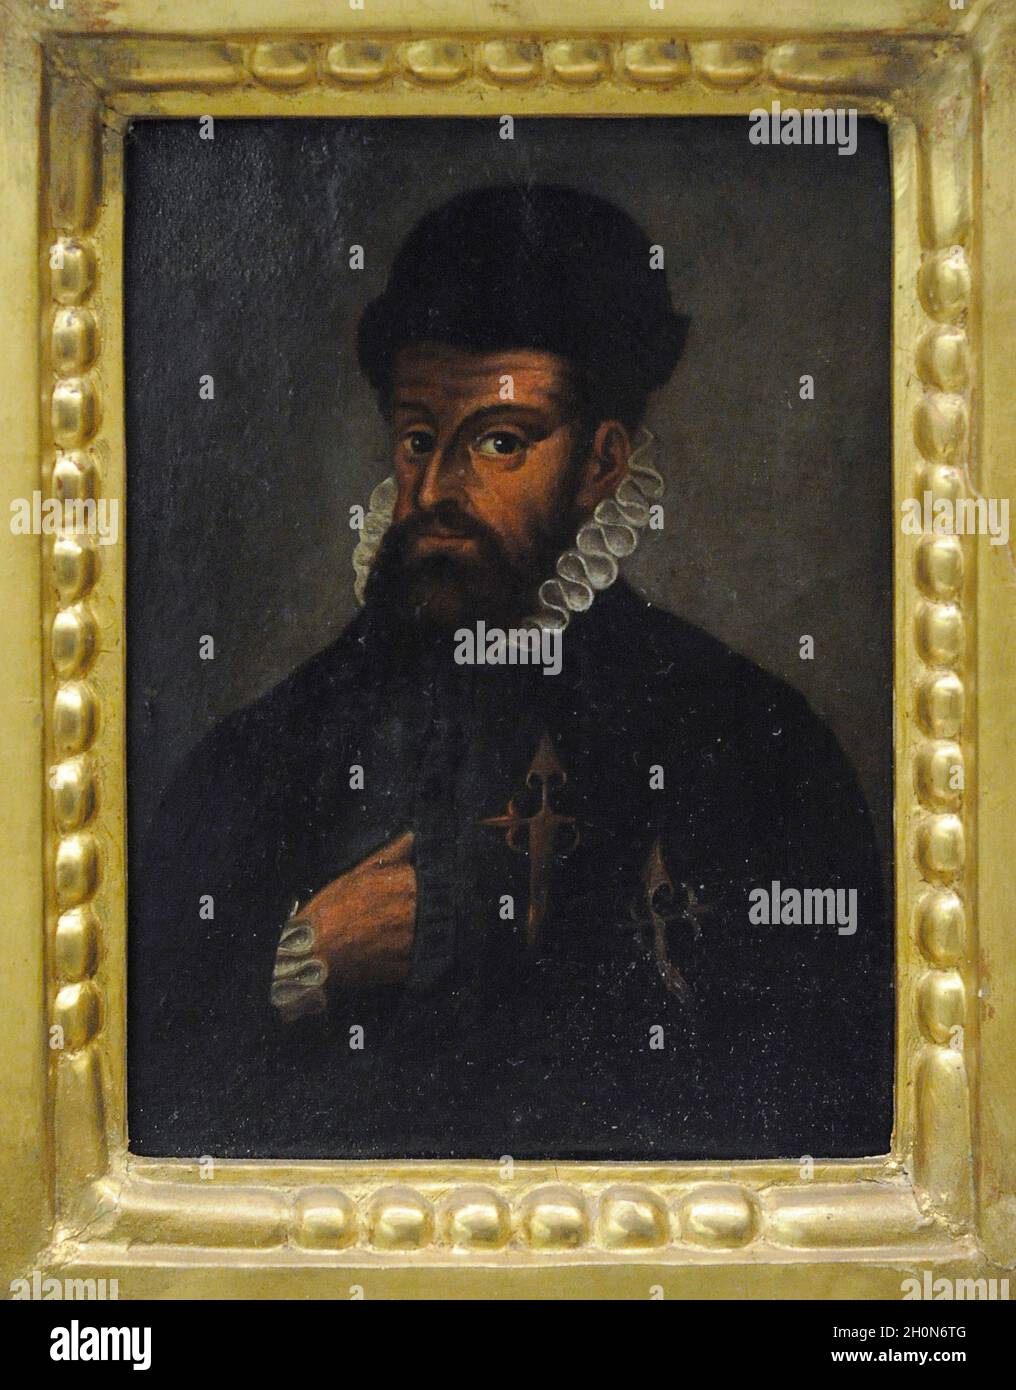 Francisco Pizarro (env.1476-1541).explorateur espagnol et conquistador.Après la conquête du Pérou, a fondé sa capitale, Lima.Portrait anonyme, Espagne Banque D'Images